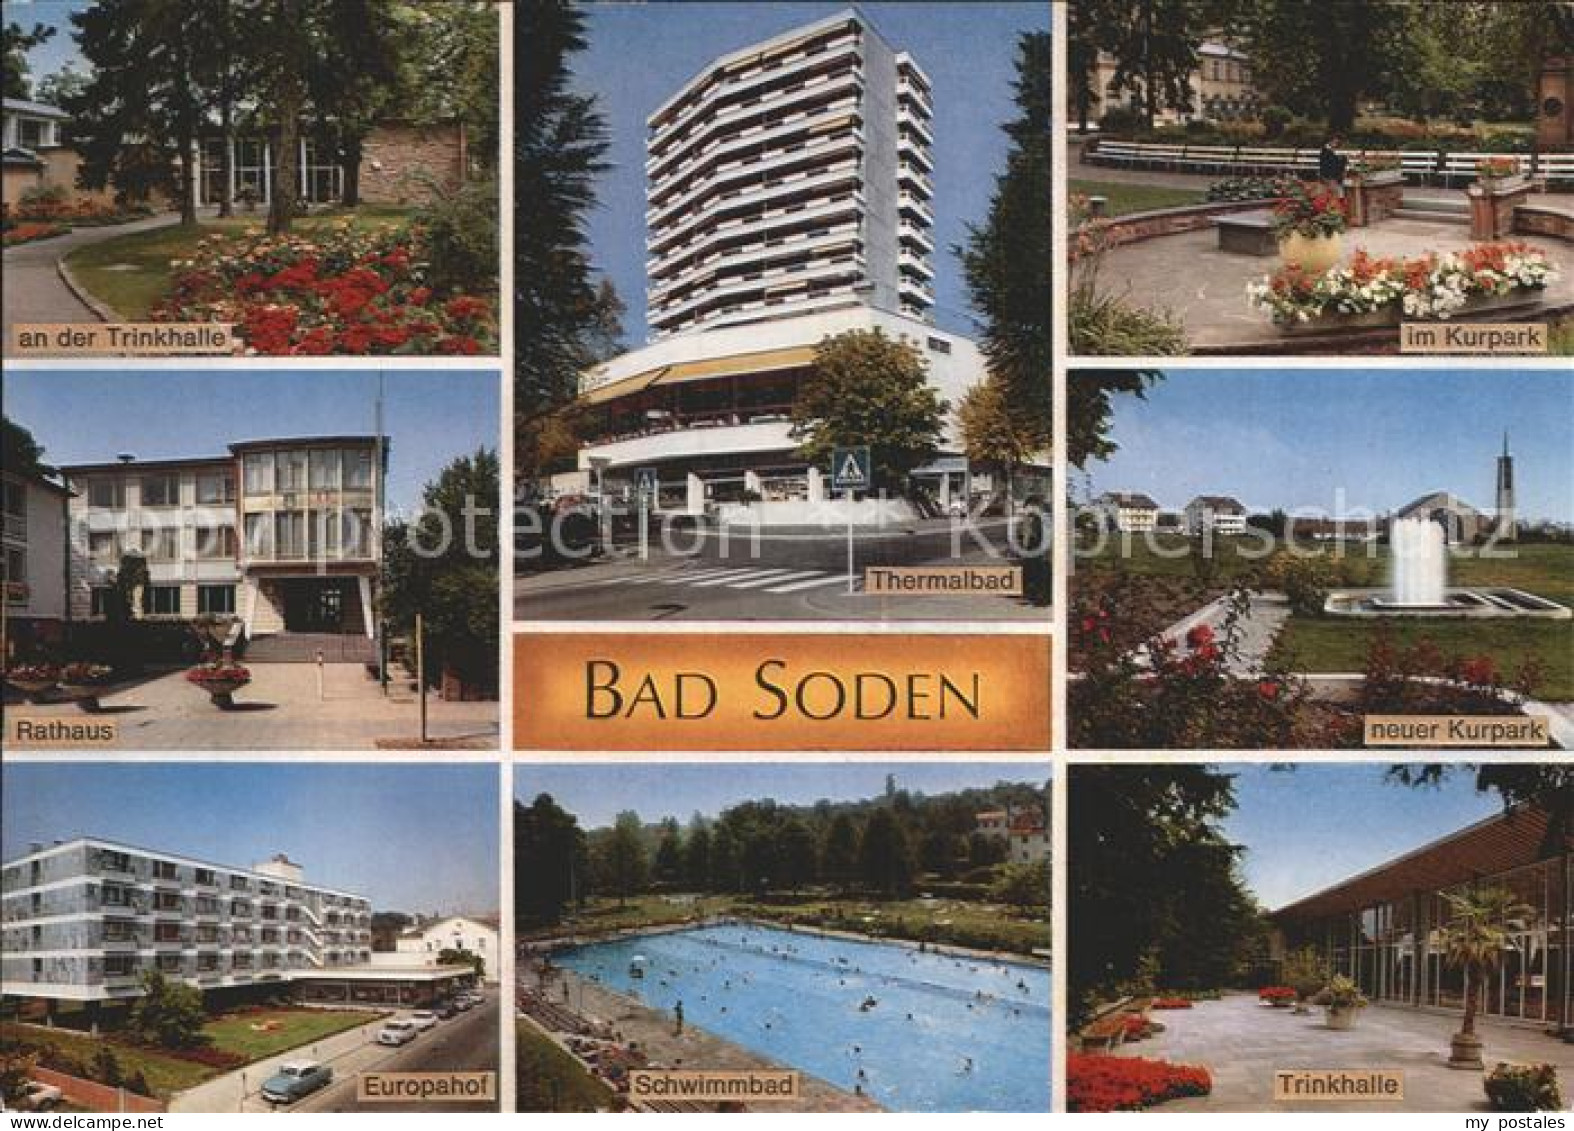 72402069 Bad Soden Taunus Kurpark Rathaus Europahof Trinkhalle Thermalbad Neuer  - Bad Soden